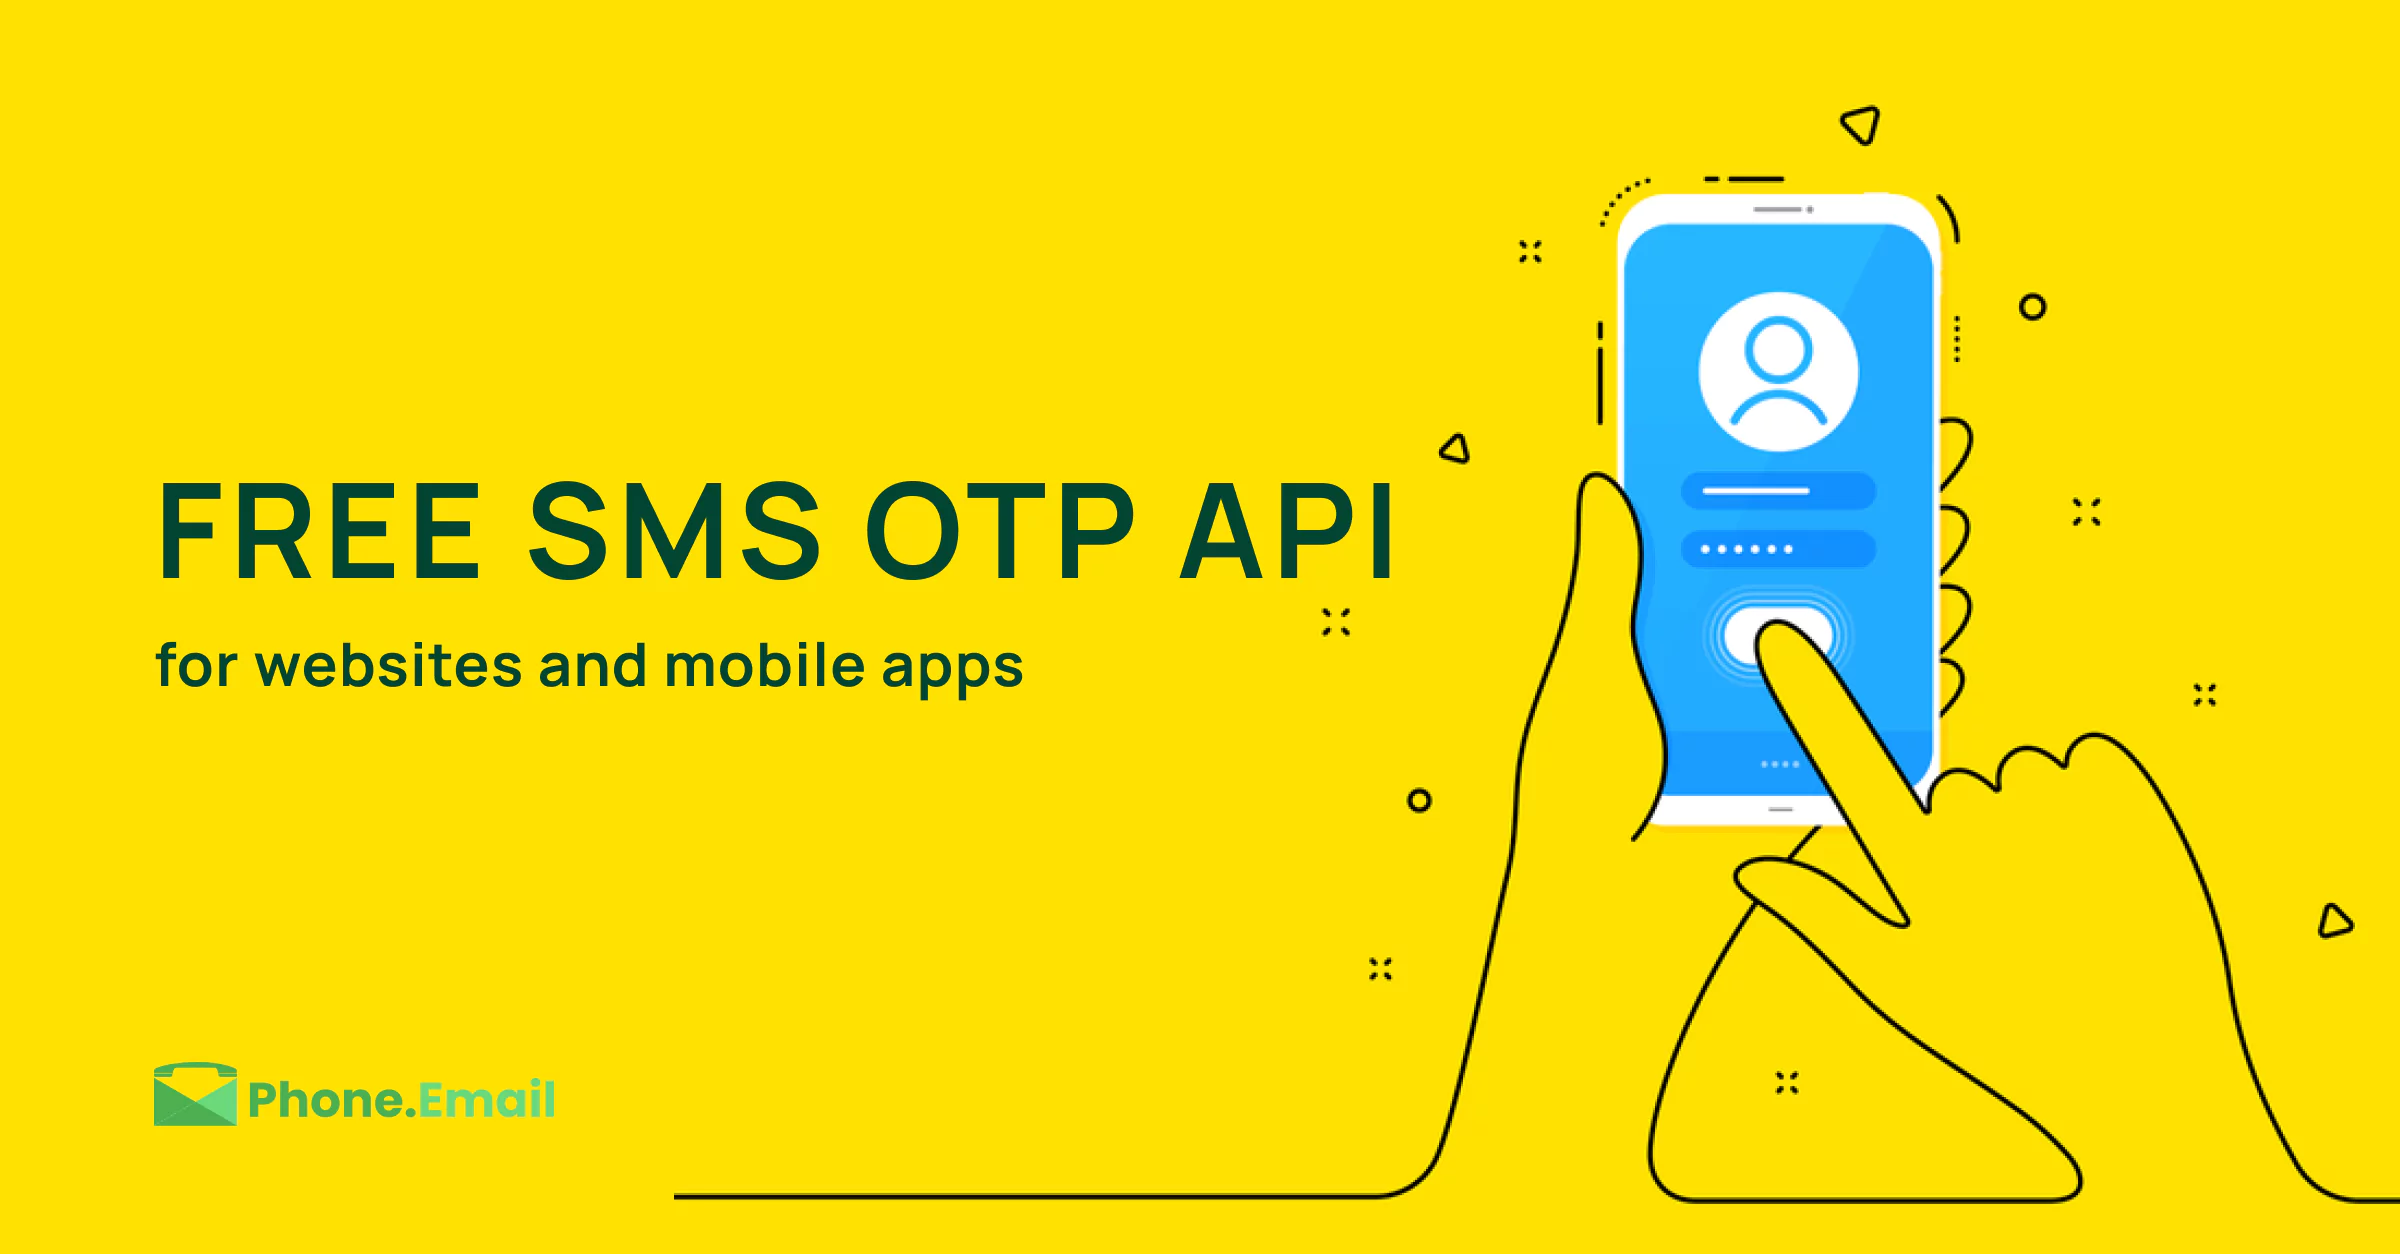 SMS OTP API for NodeJS, node js otp sms, node js send otp, send OTP to mobile in node js, OTP API Node JS, Phone.Email, Sign in with phone, NodeJS authentication